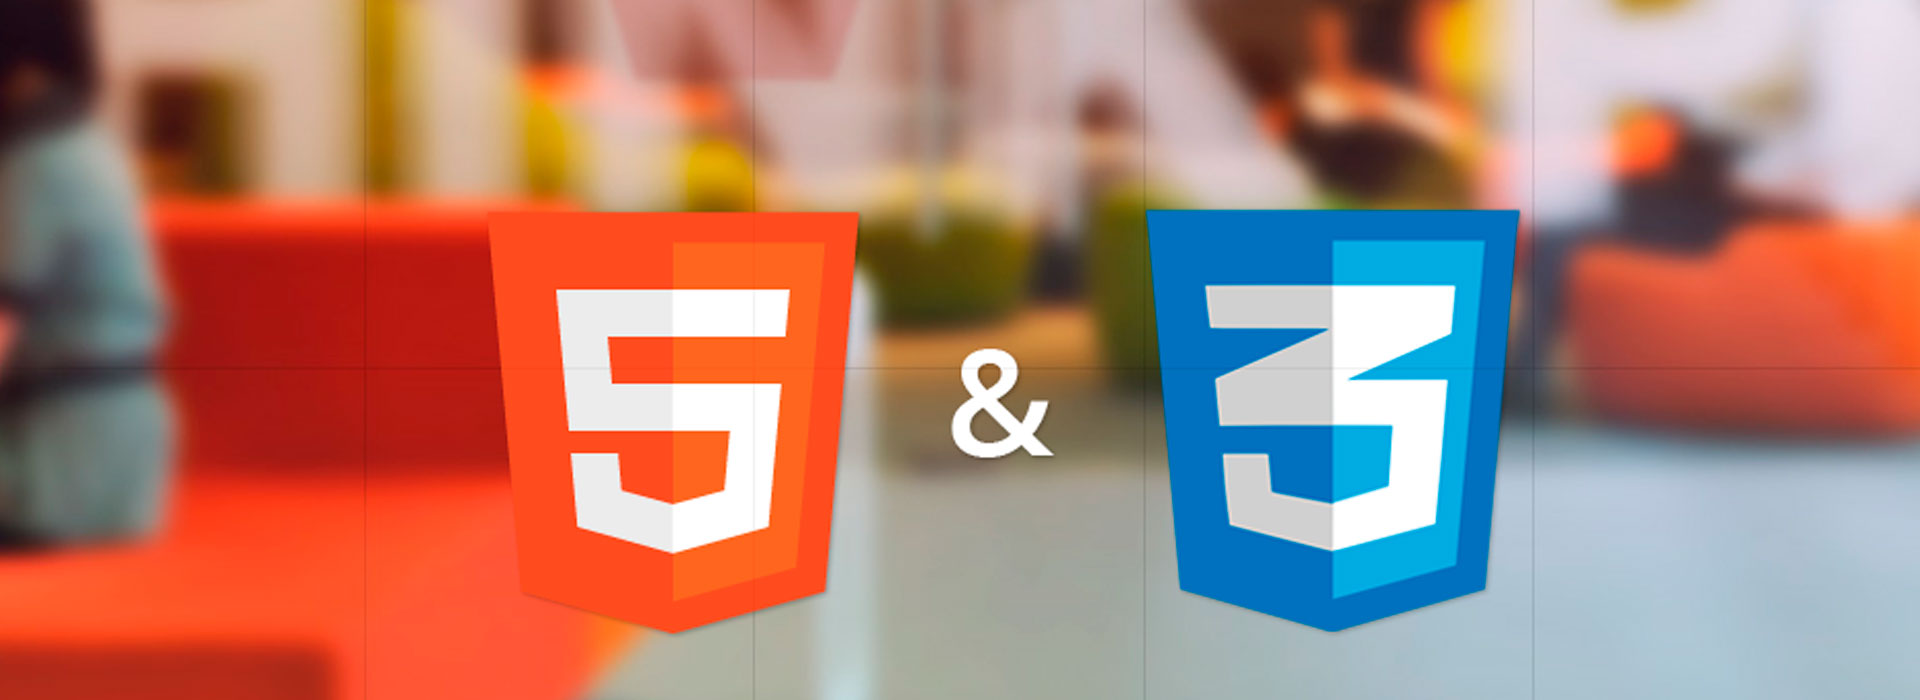 Curso HTML5 + CSS3